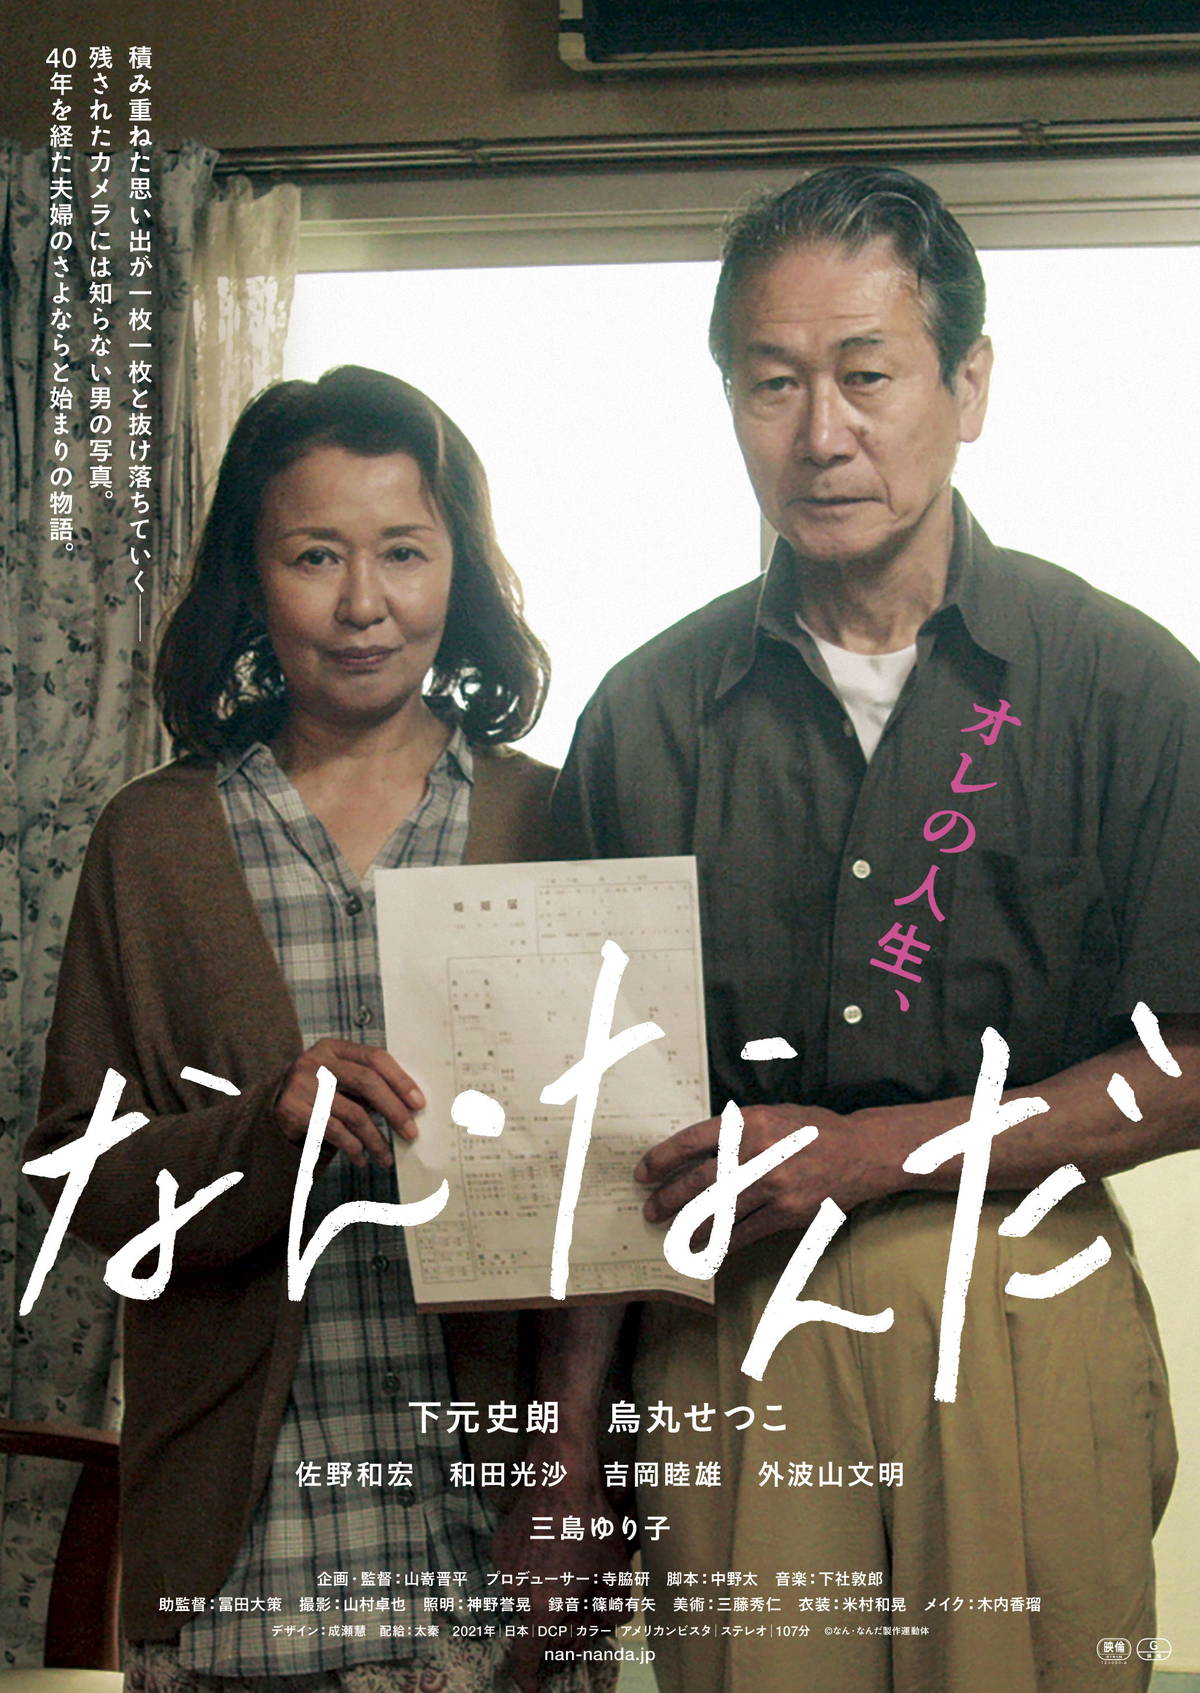 Nan Nanda film - Shinpei Yamazaki - poster